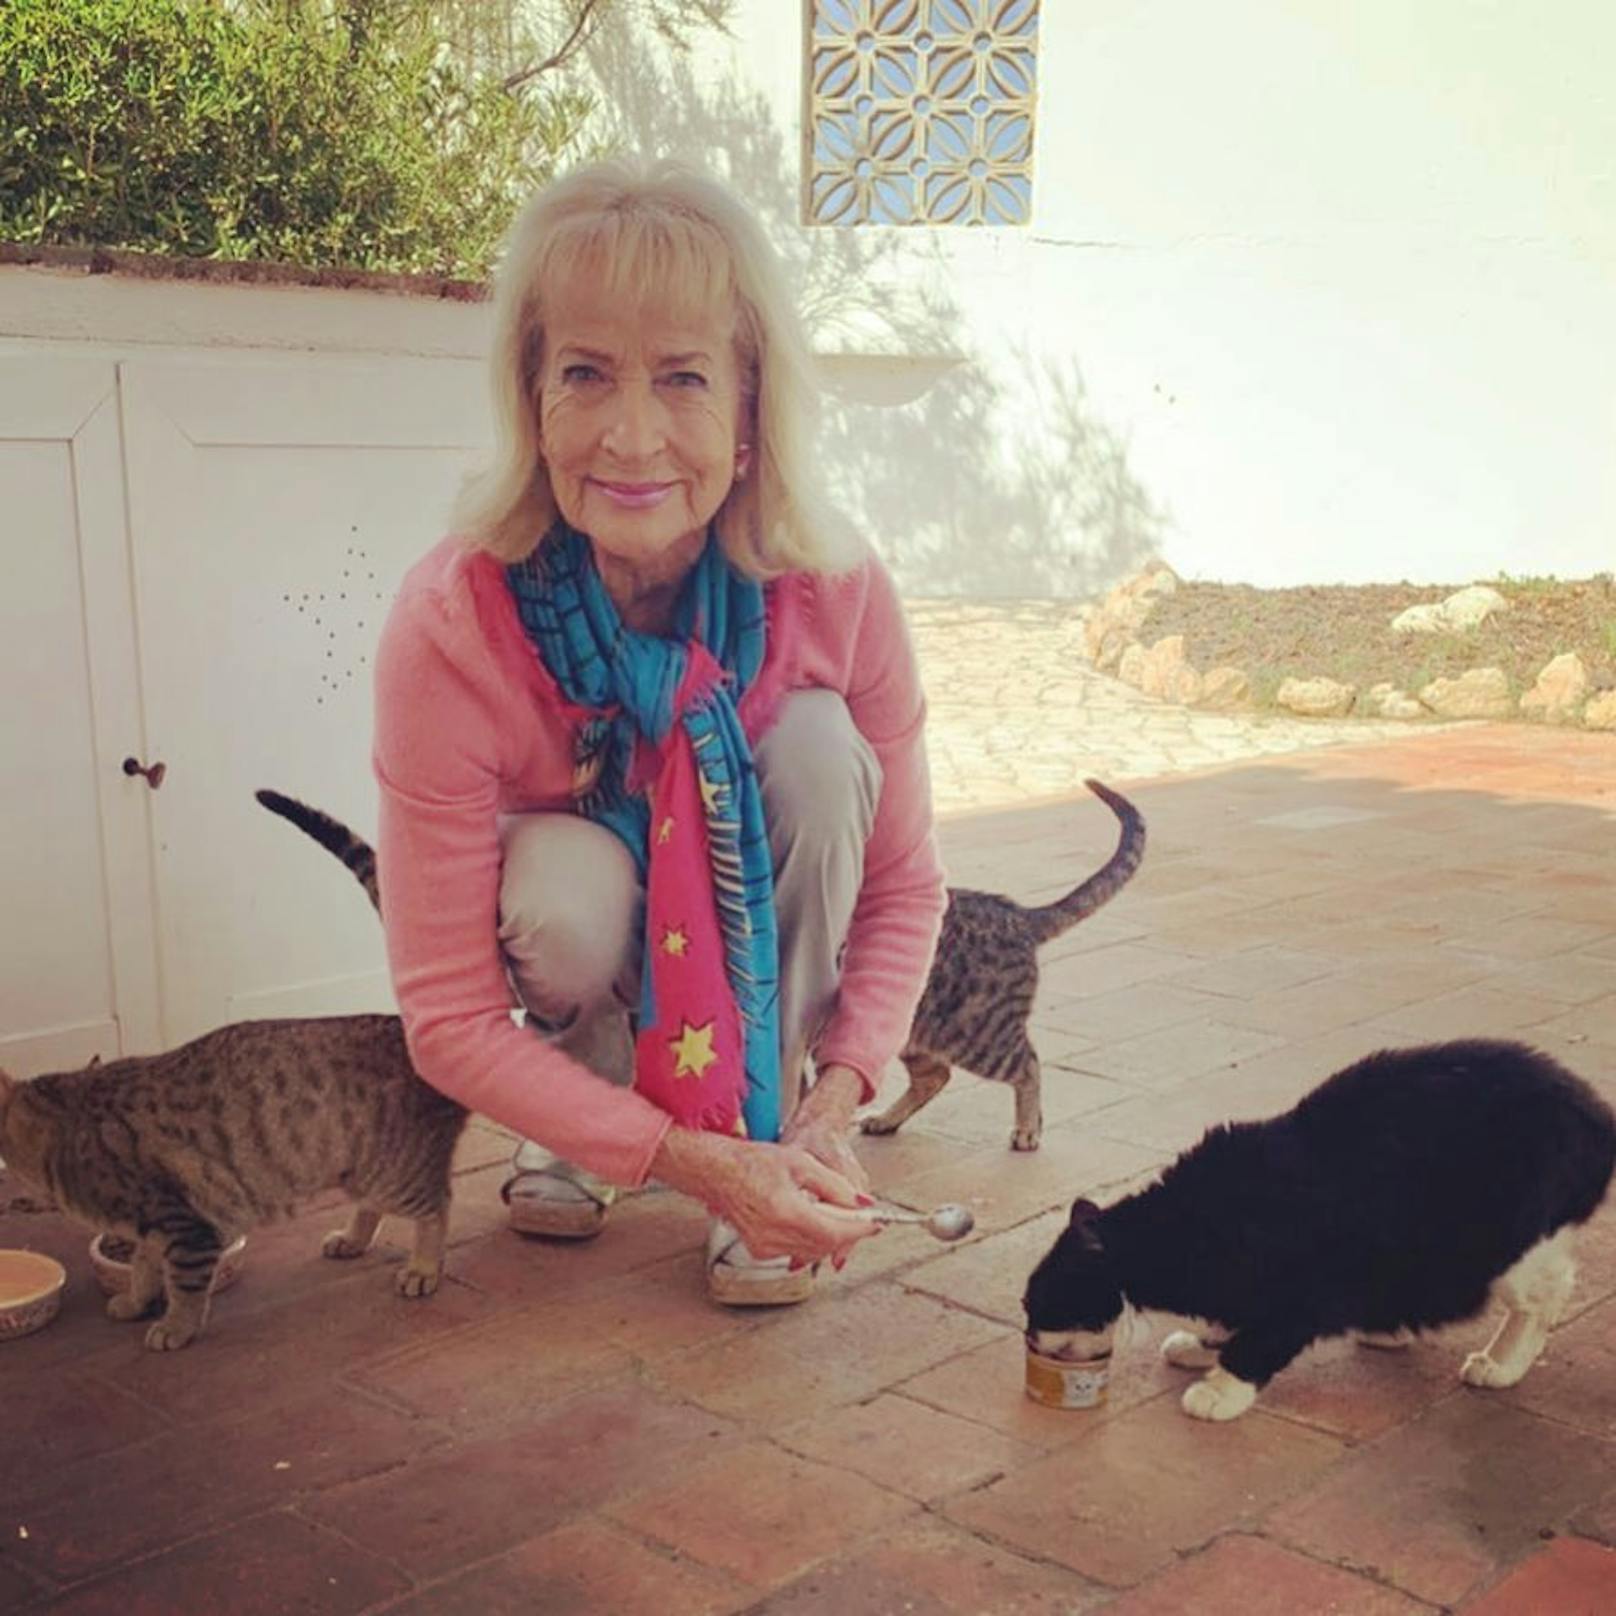 In Portugal versorgt Koller vier herzige Katzen zu denen sie jetzt zurückkehrt.